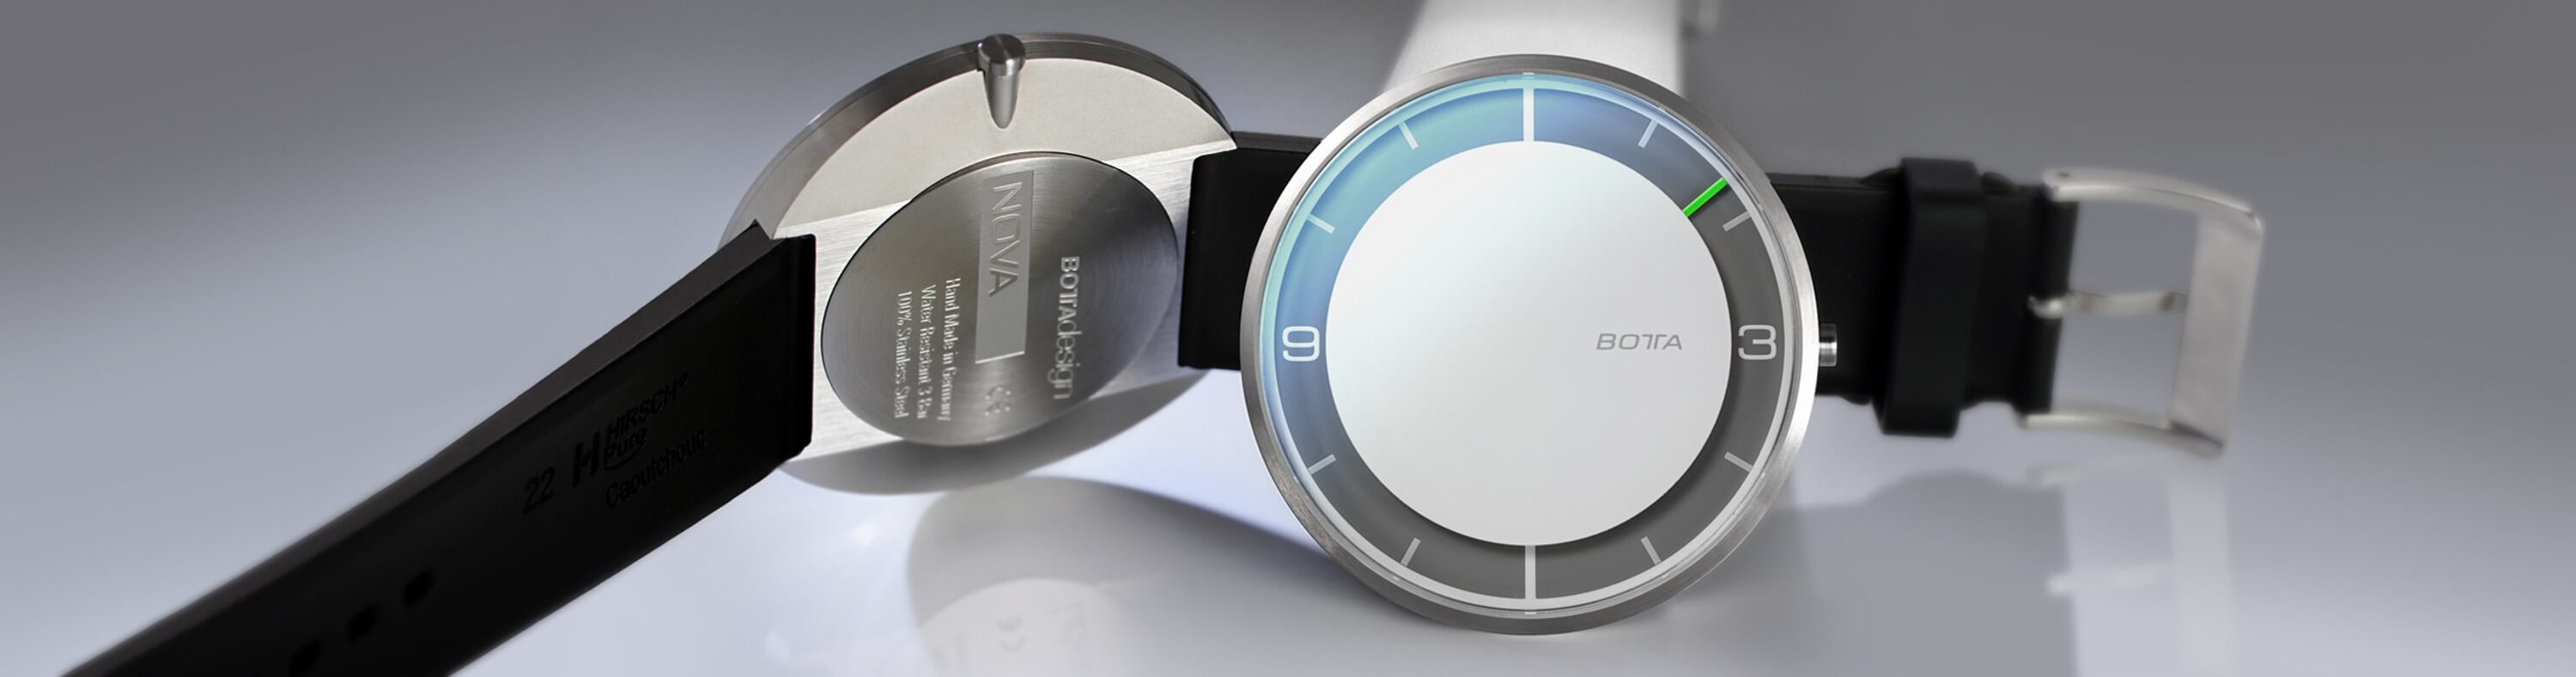 Quartz Nova Plus White Watch